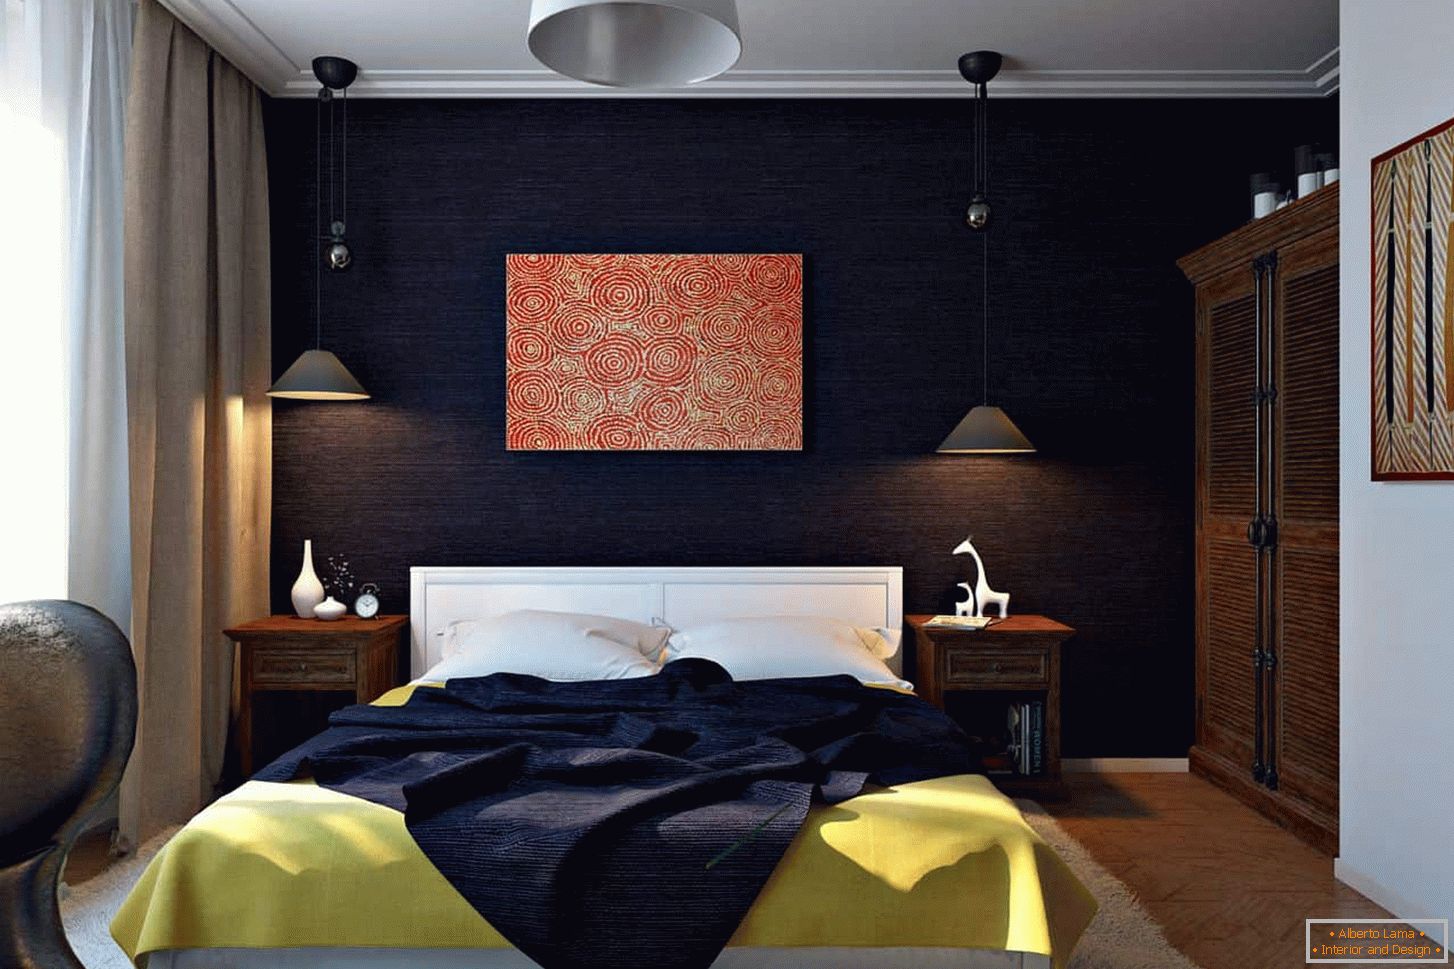 Auberginenfarbe in der Dekoration der Schlafzimmerwände